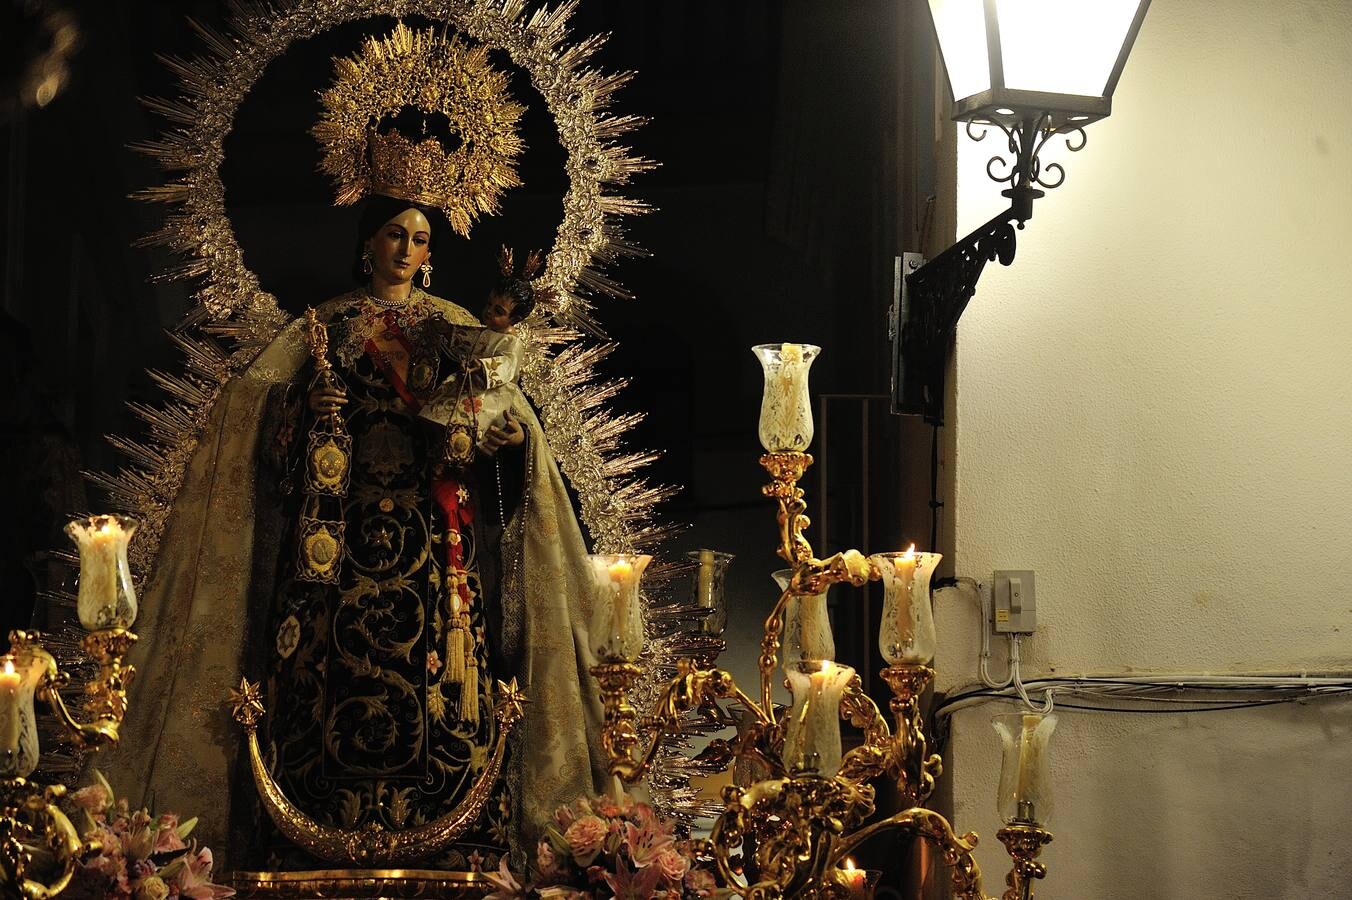 Galería de la procesión de la Virgen del Carmen de San Gil